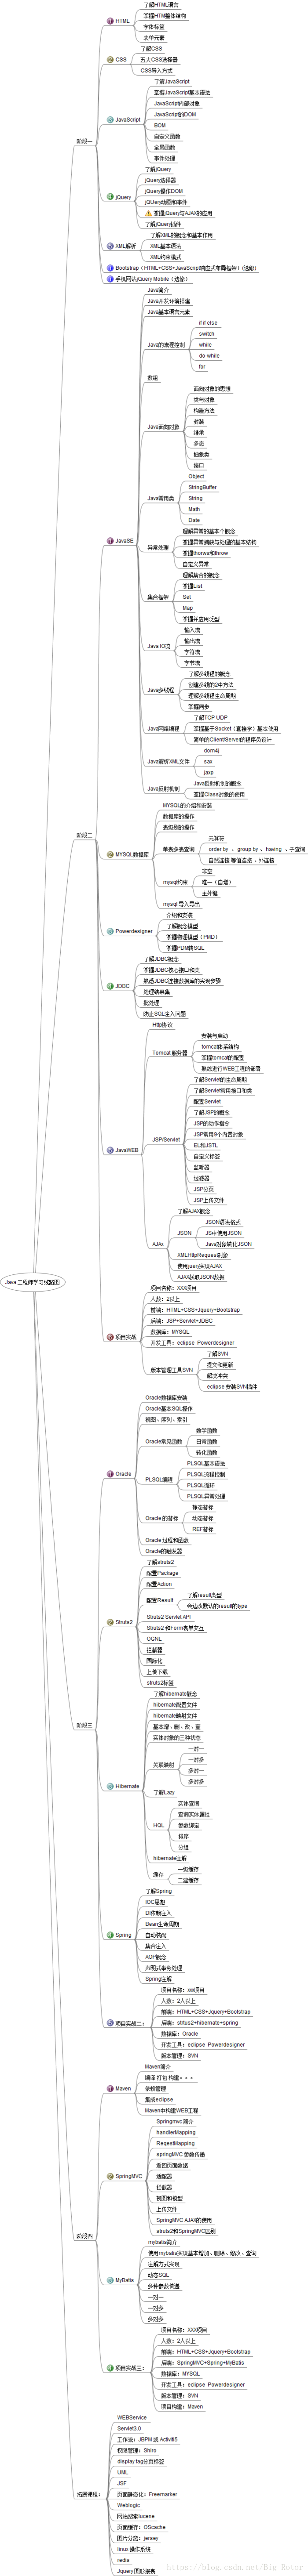 图2 Java攻城狮具体学习线路图